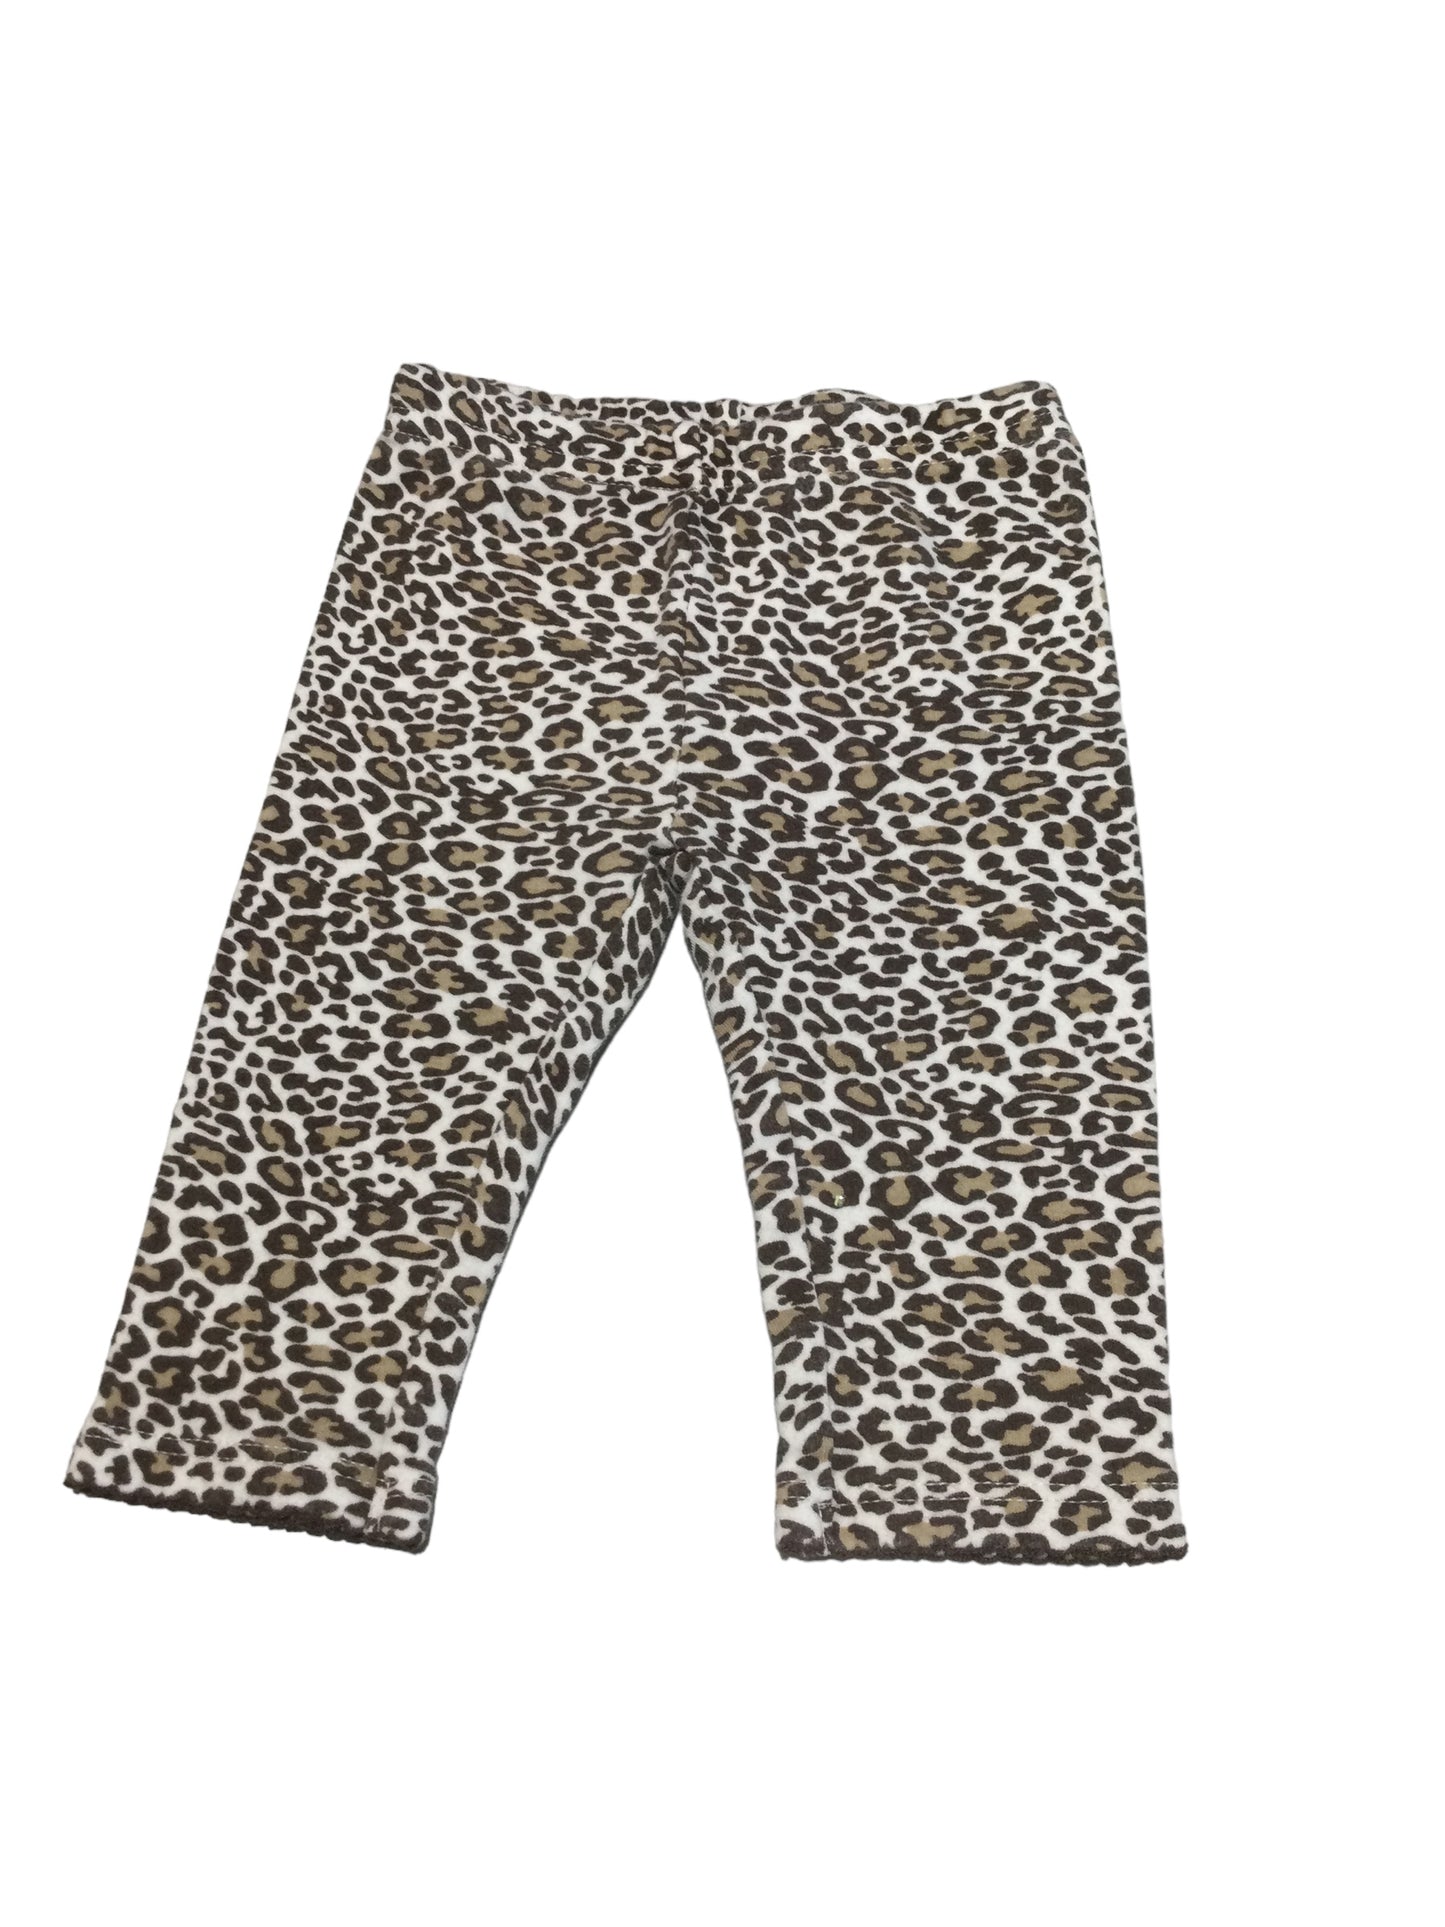 Cheetah Print Leggings